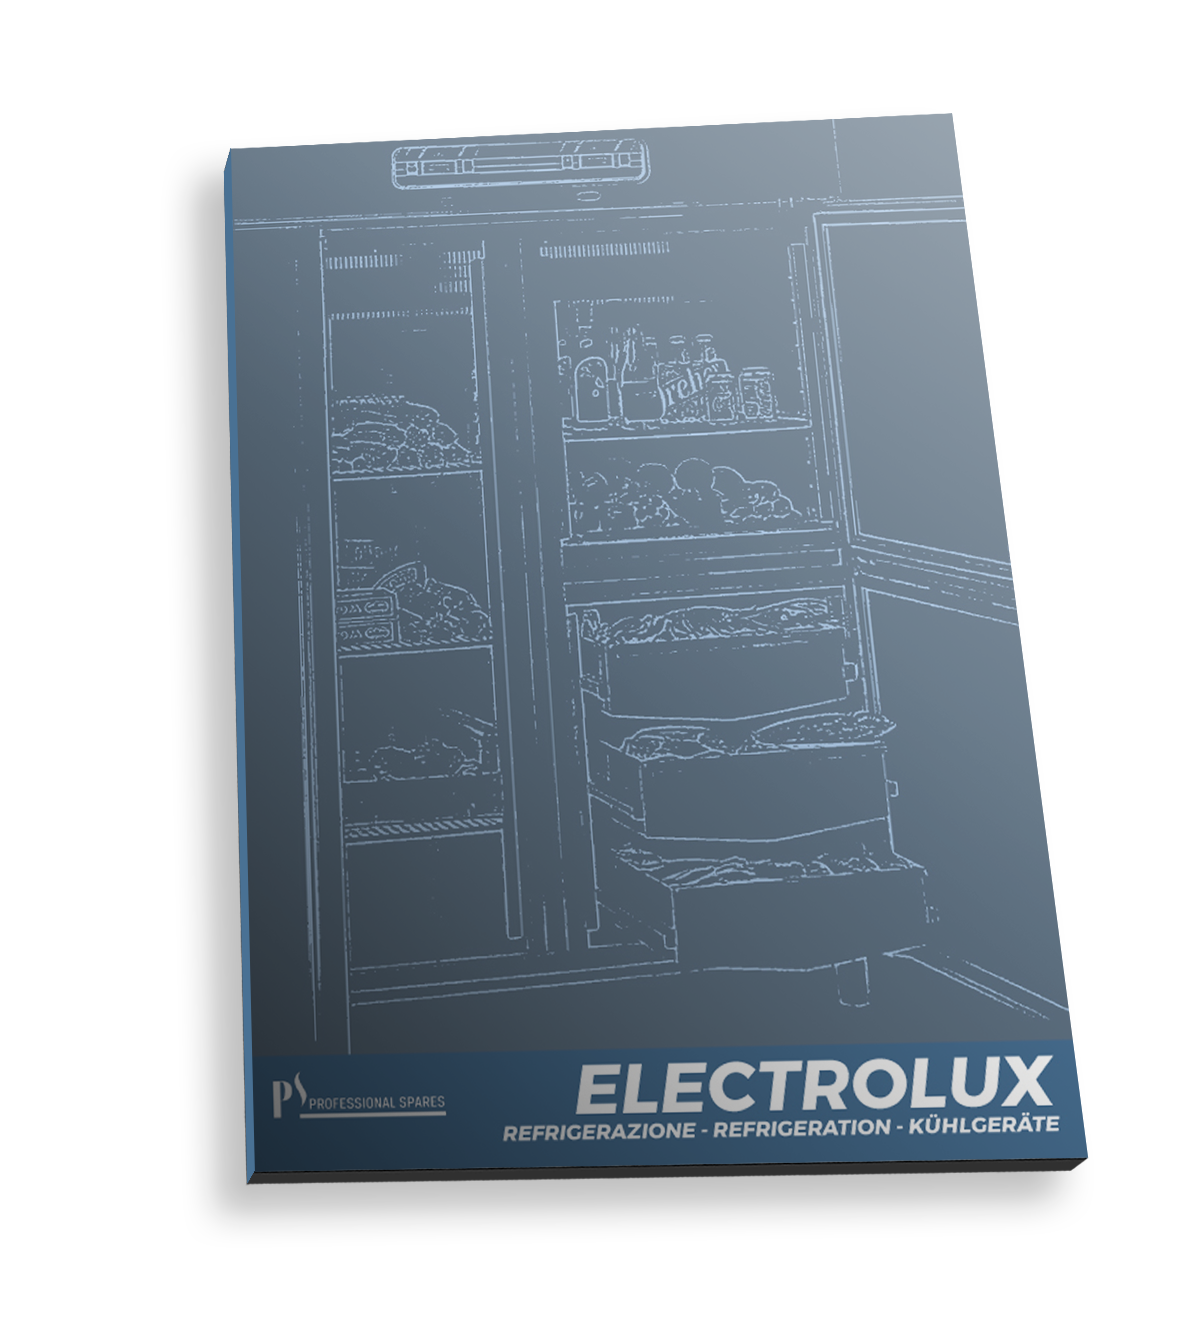 Image pdf Electrolux